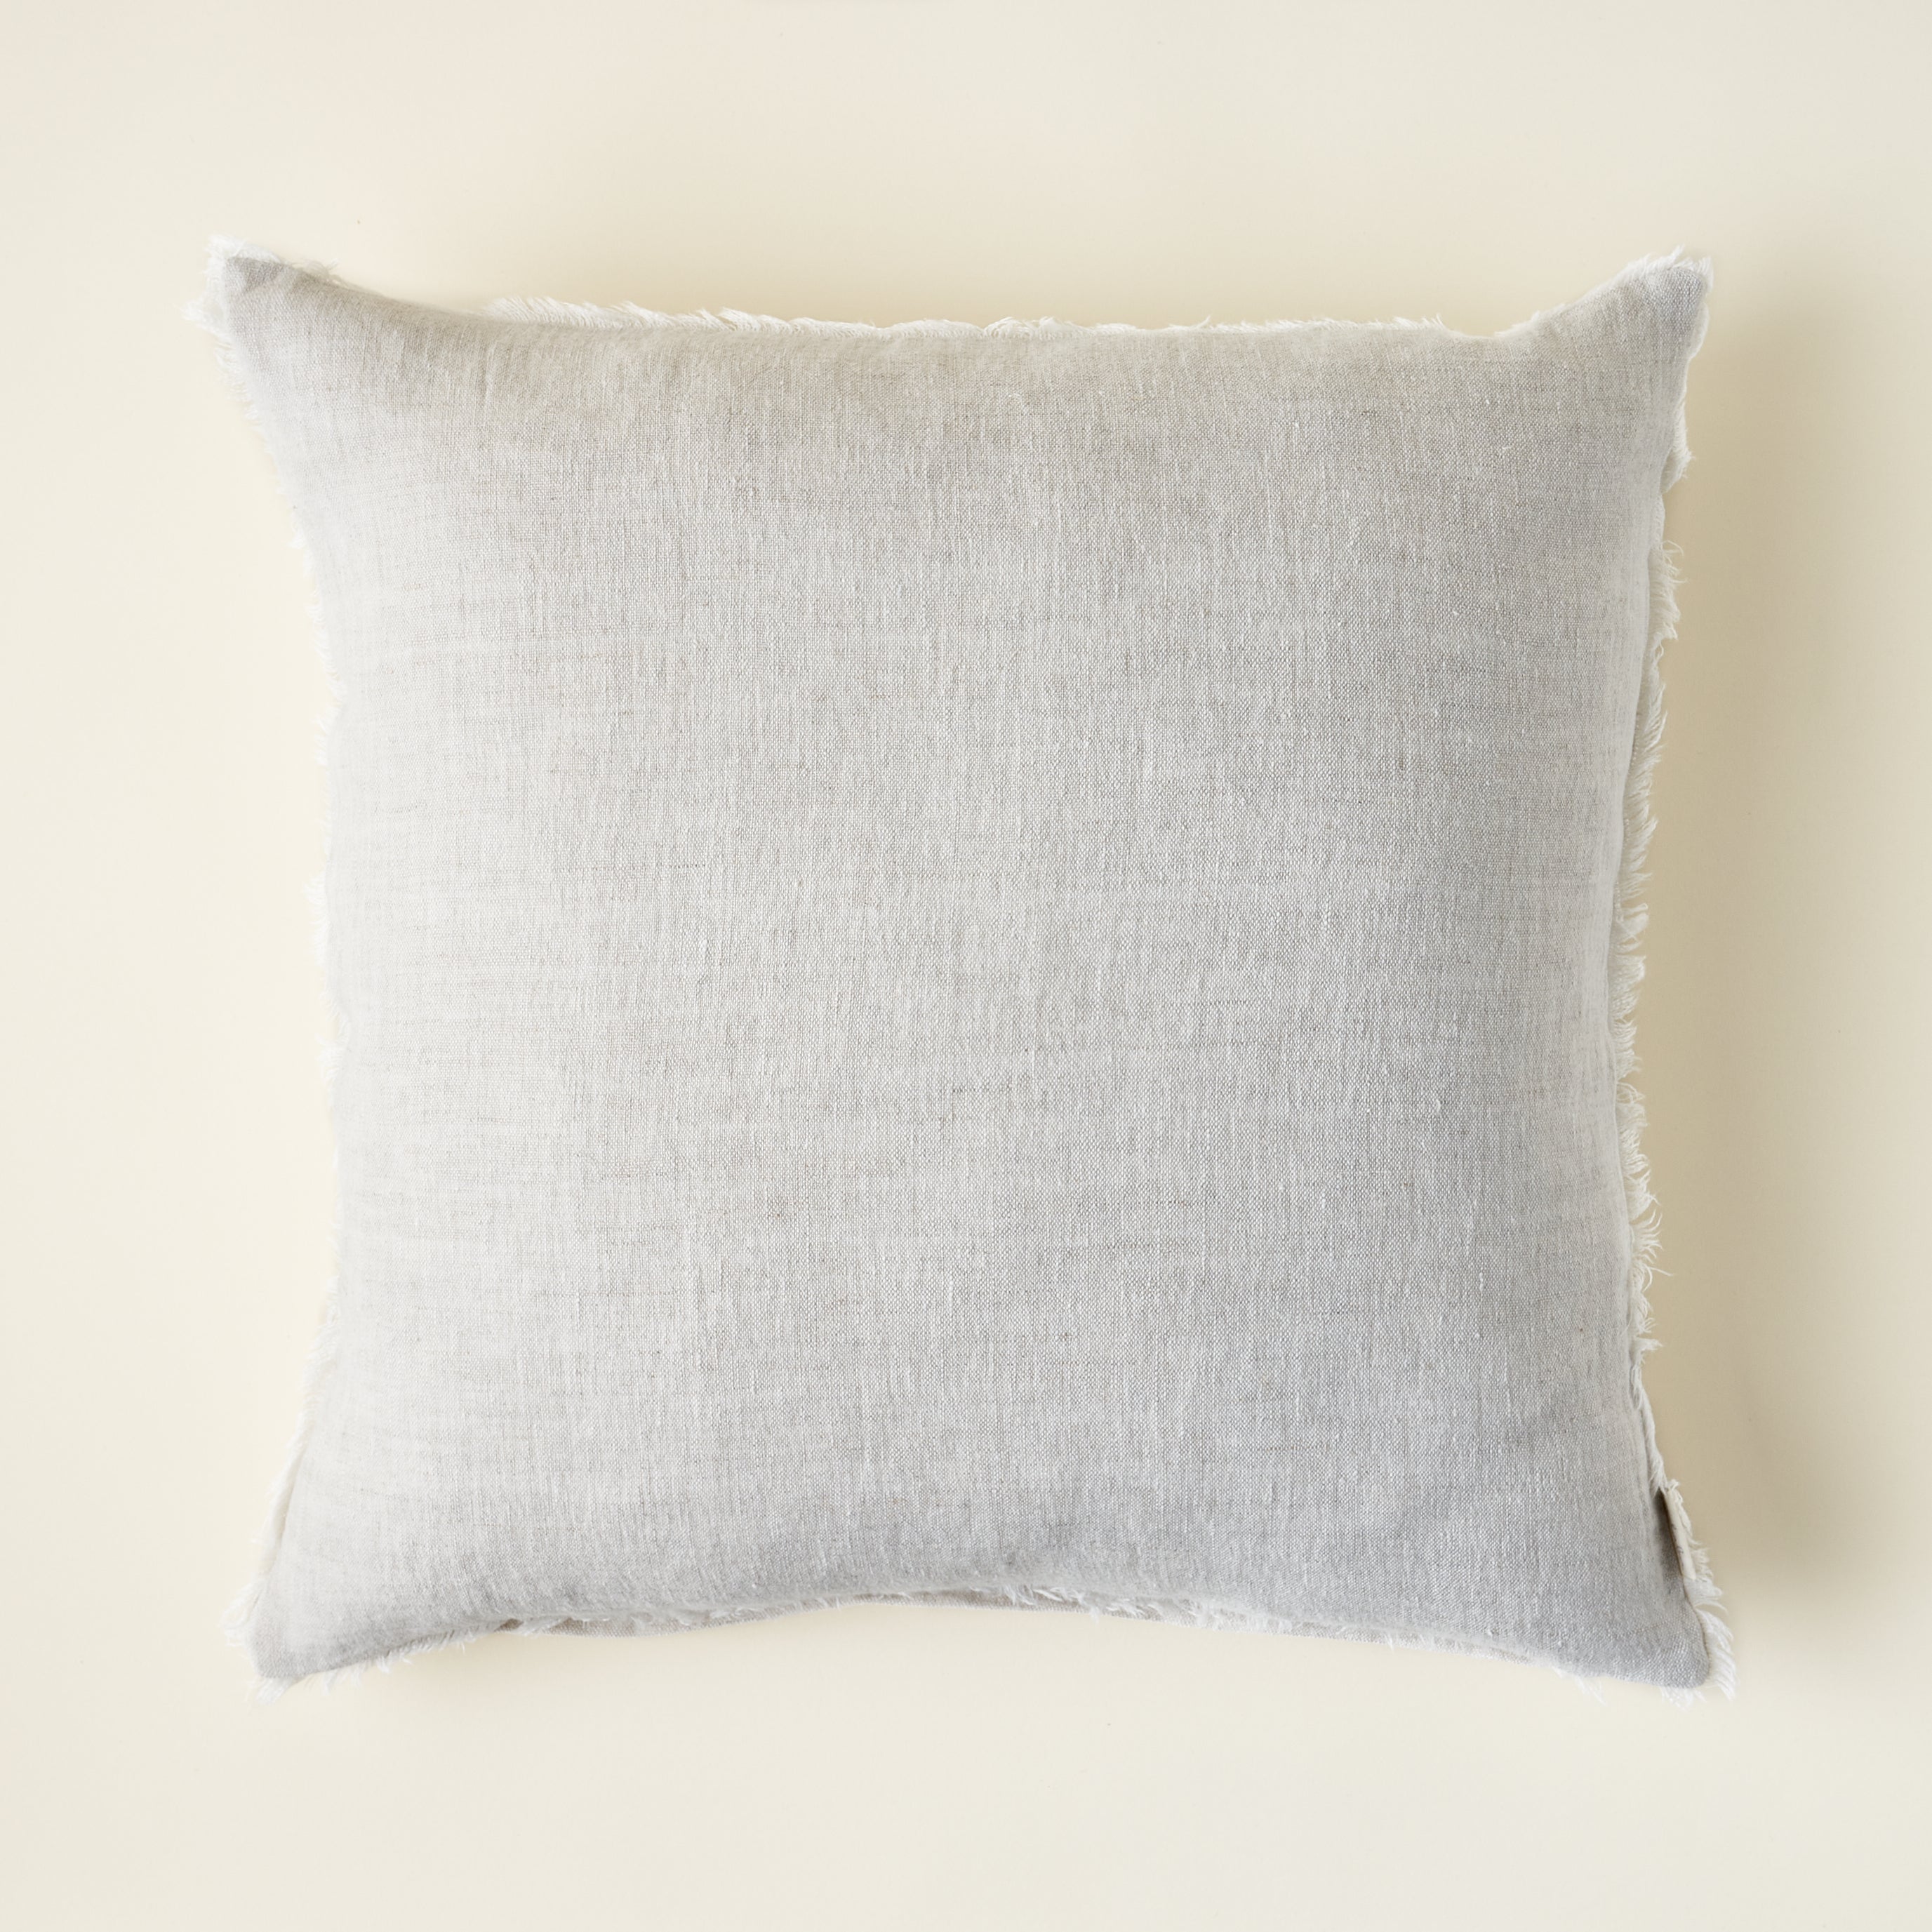 Chambray Linen Pillow